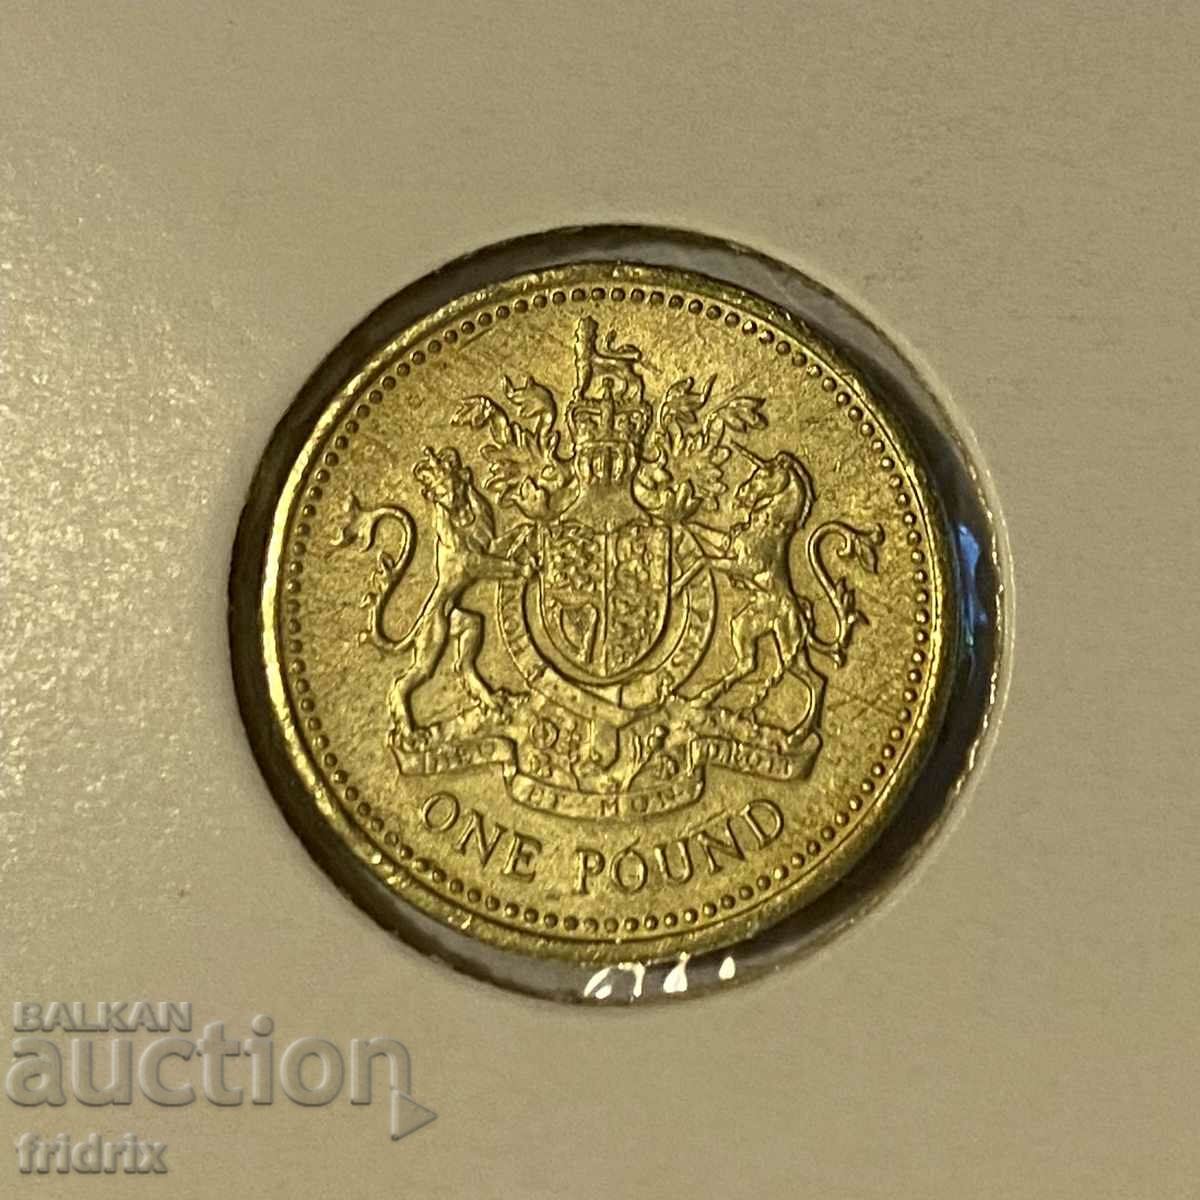 Great Britain 1 pound / Great Britain 1 pound 2003